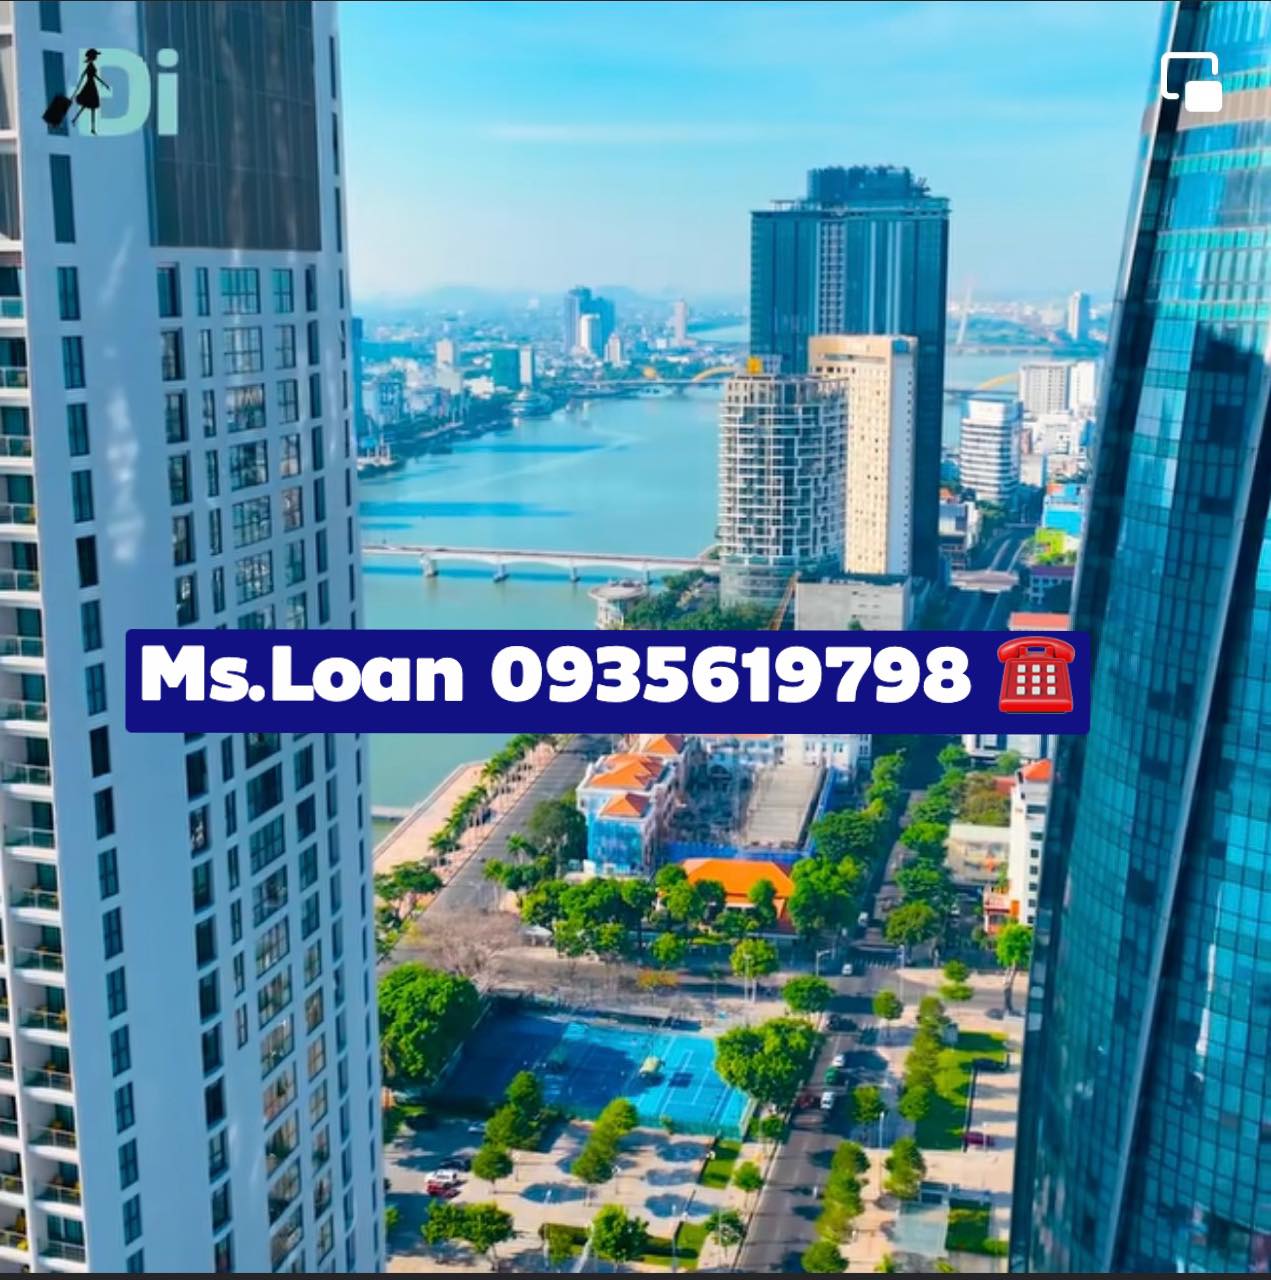 Bán nhà 3 tầng đường Nguyễn Chí Thanh 146m2 giá 15 tỷ vị trí đẹp ở kinh doanh Lh 0935619798